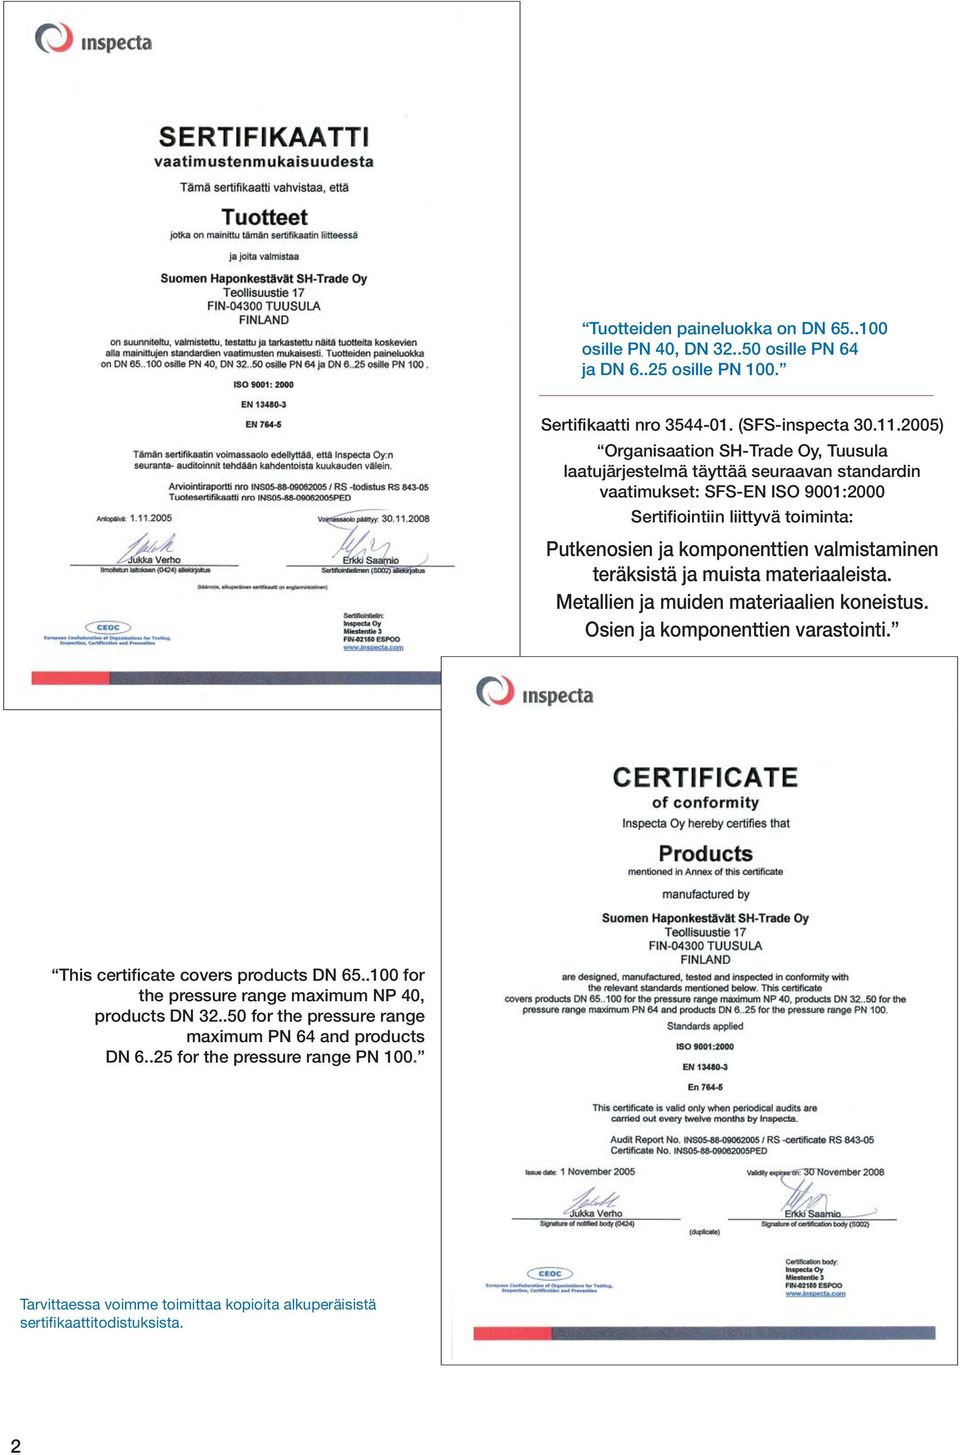 valmistaminen teräksistä ja muista materiaaleista. Metallien ja muiden materiaalien koneistus. Osien ja komponenttien varastointi. This certificate covers products DN 65.